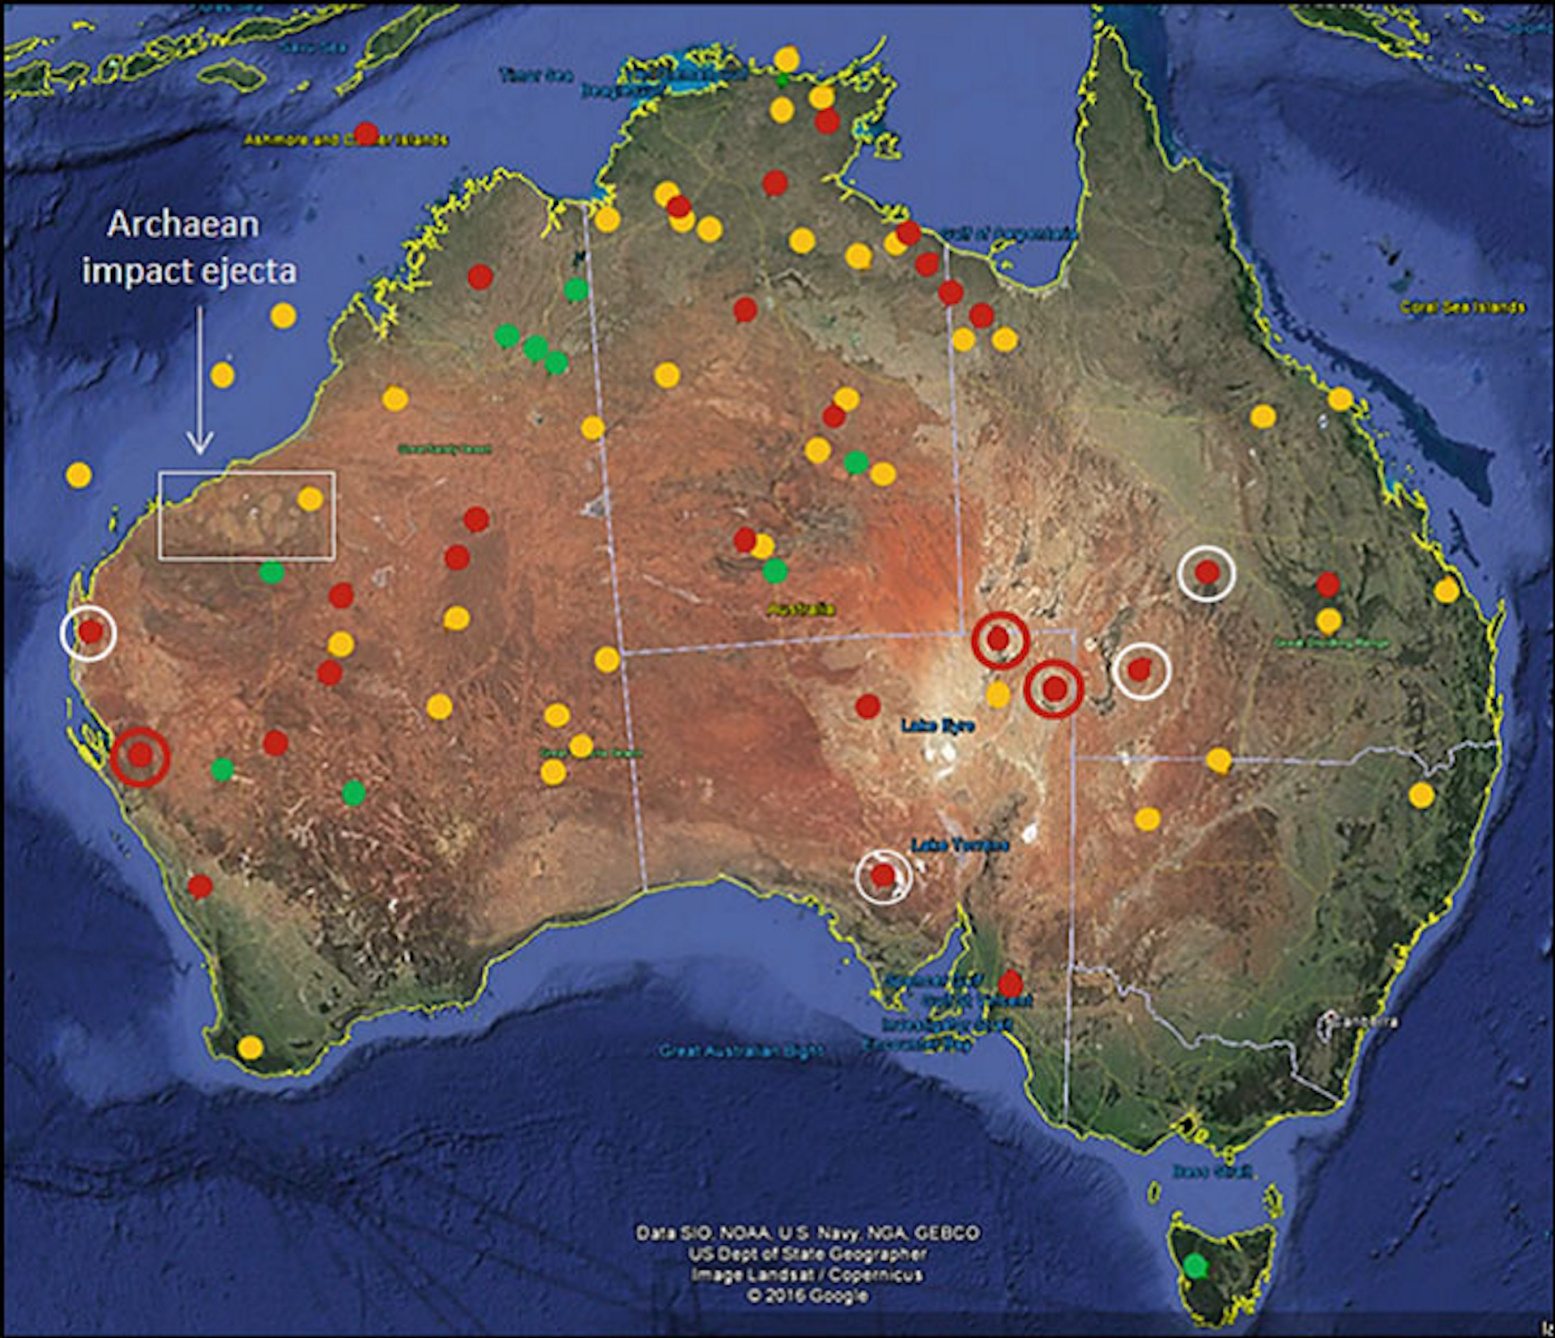 Бұл карта Австралия континентінде және теңізде белгісіз, ықтимал немесе ықтимал әсер етудің айналмалы құрылымдарының таралуын көрсетеді. Жасыл нүктелер расталған соққы кратерлерін білдіреді. Қызыл нүктелер ені 100 км-ден асатын расталған соққы құрылымдарын білдіреді, ал ақ шеңберлердегі қызыл нүктелер ені 50 км-ден астам. Сары нүктелер ықтимал соққы құрылымдарын білдіреді.